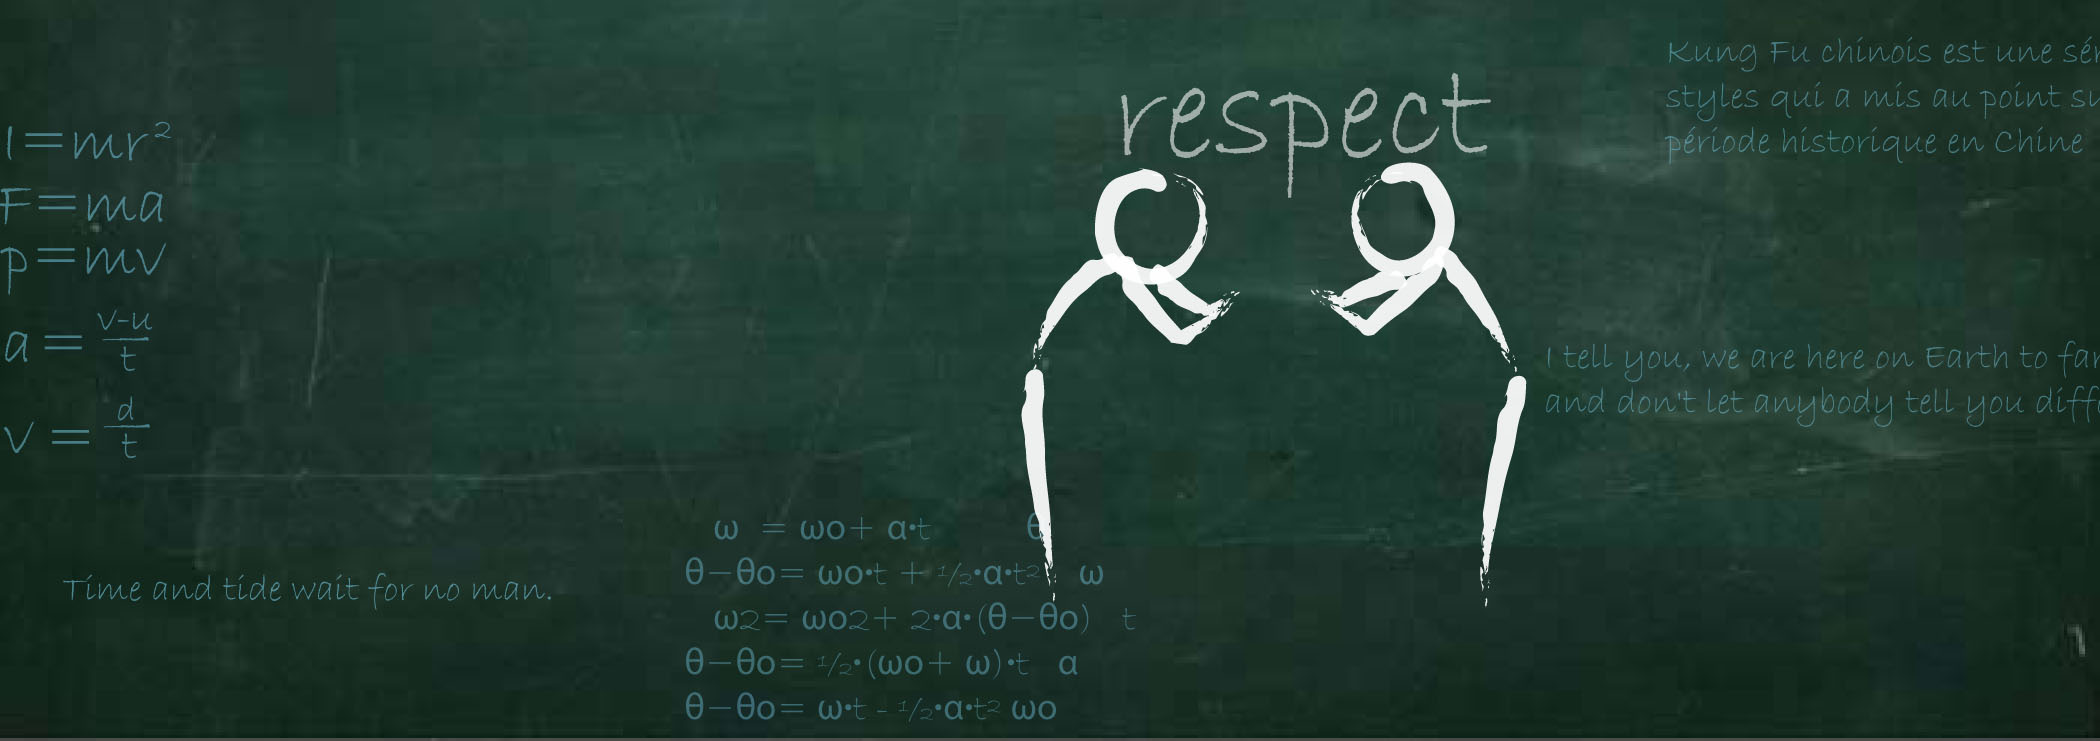 Respect.jpg